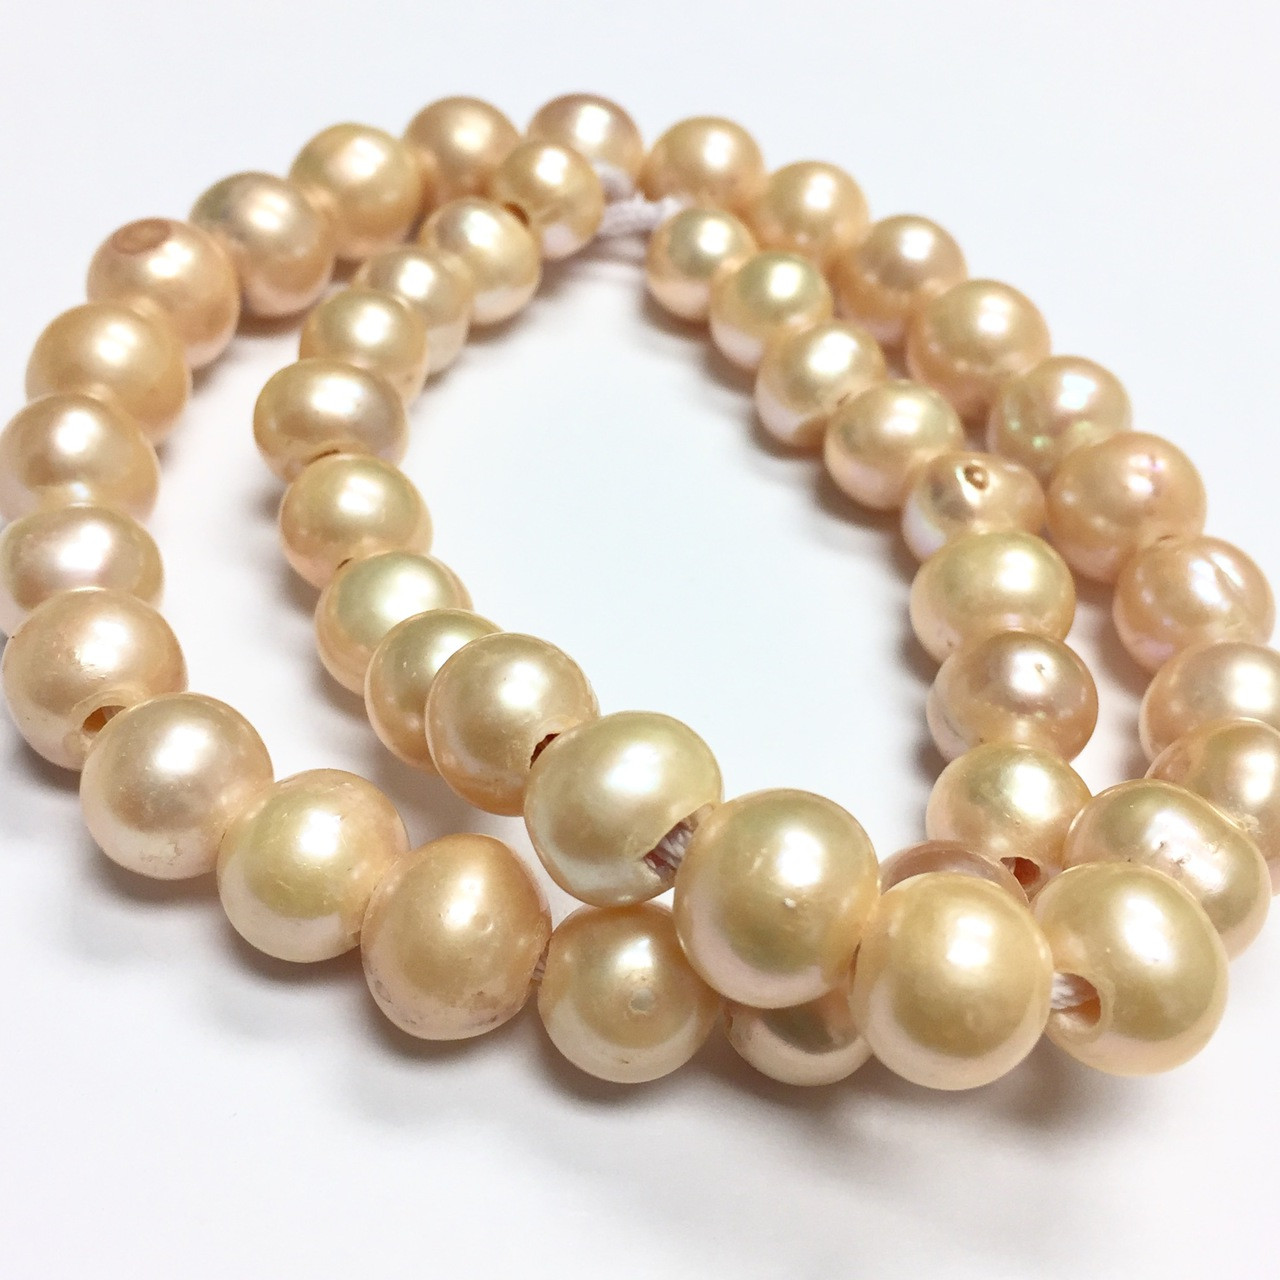 Large Holed Freshwater Potato Pearl Beads